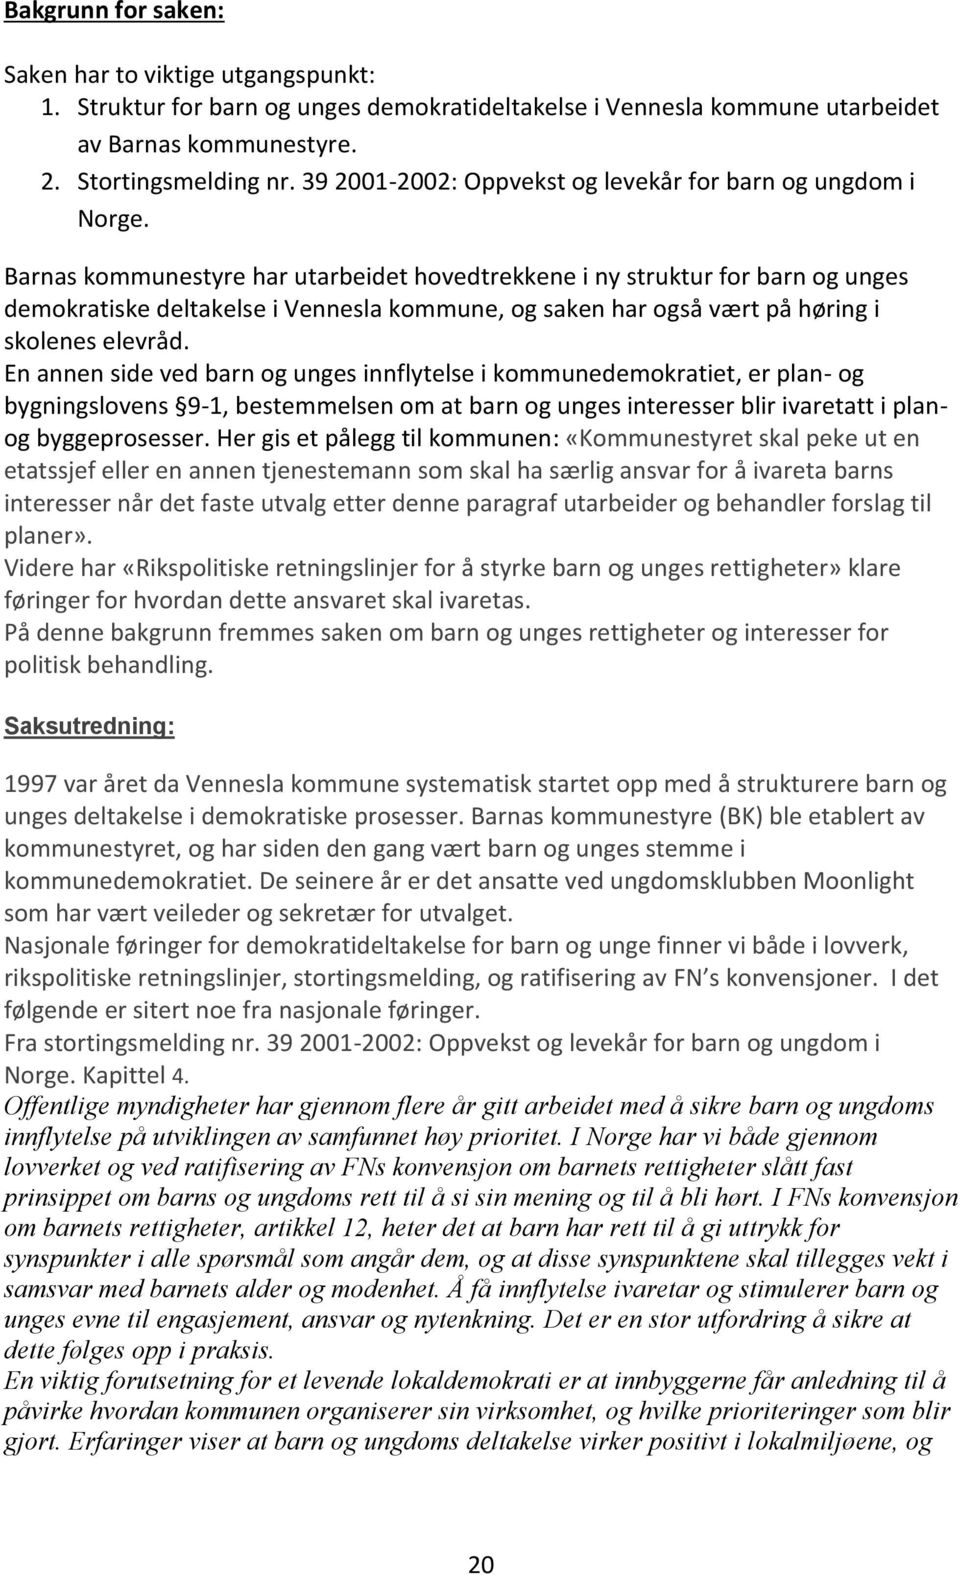 Barnas kommunestyre har utarbeidet hovedtrekkene i ny struktur for barn og unges demokratiske deltakelse i Vennesla kommune, og saken har også vært på høring i skolenes elevråd.